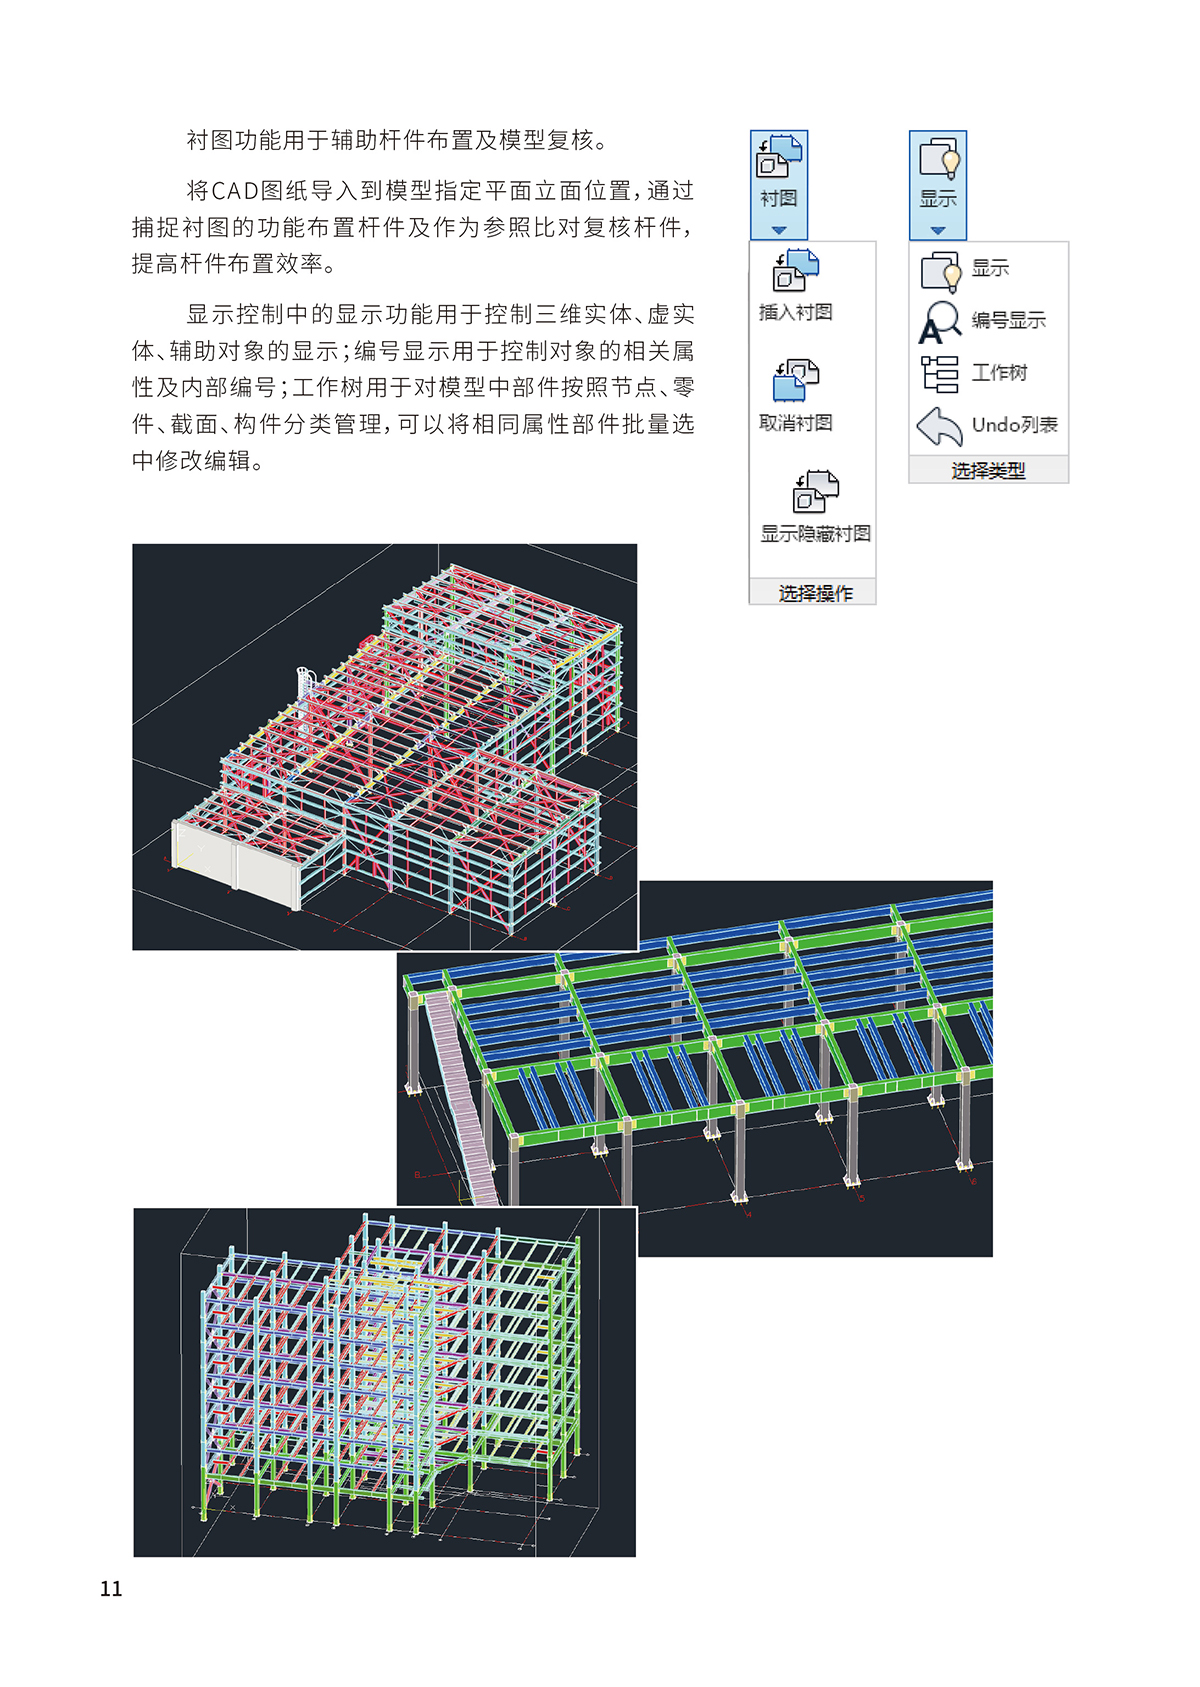 钢结构深化设计软件Y-ST-7_01.jpg